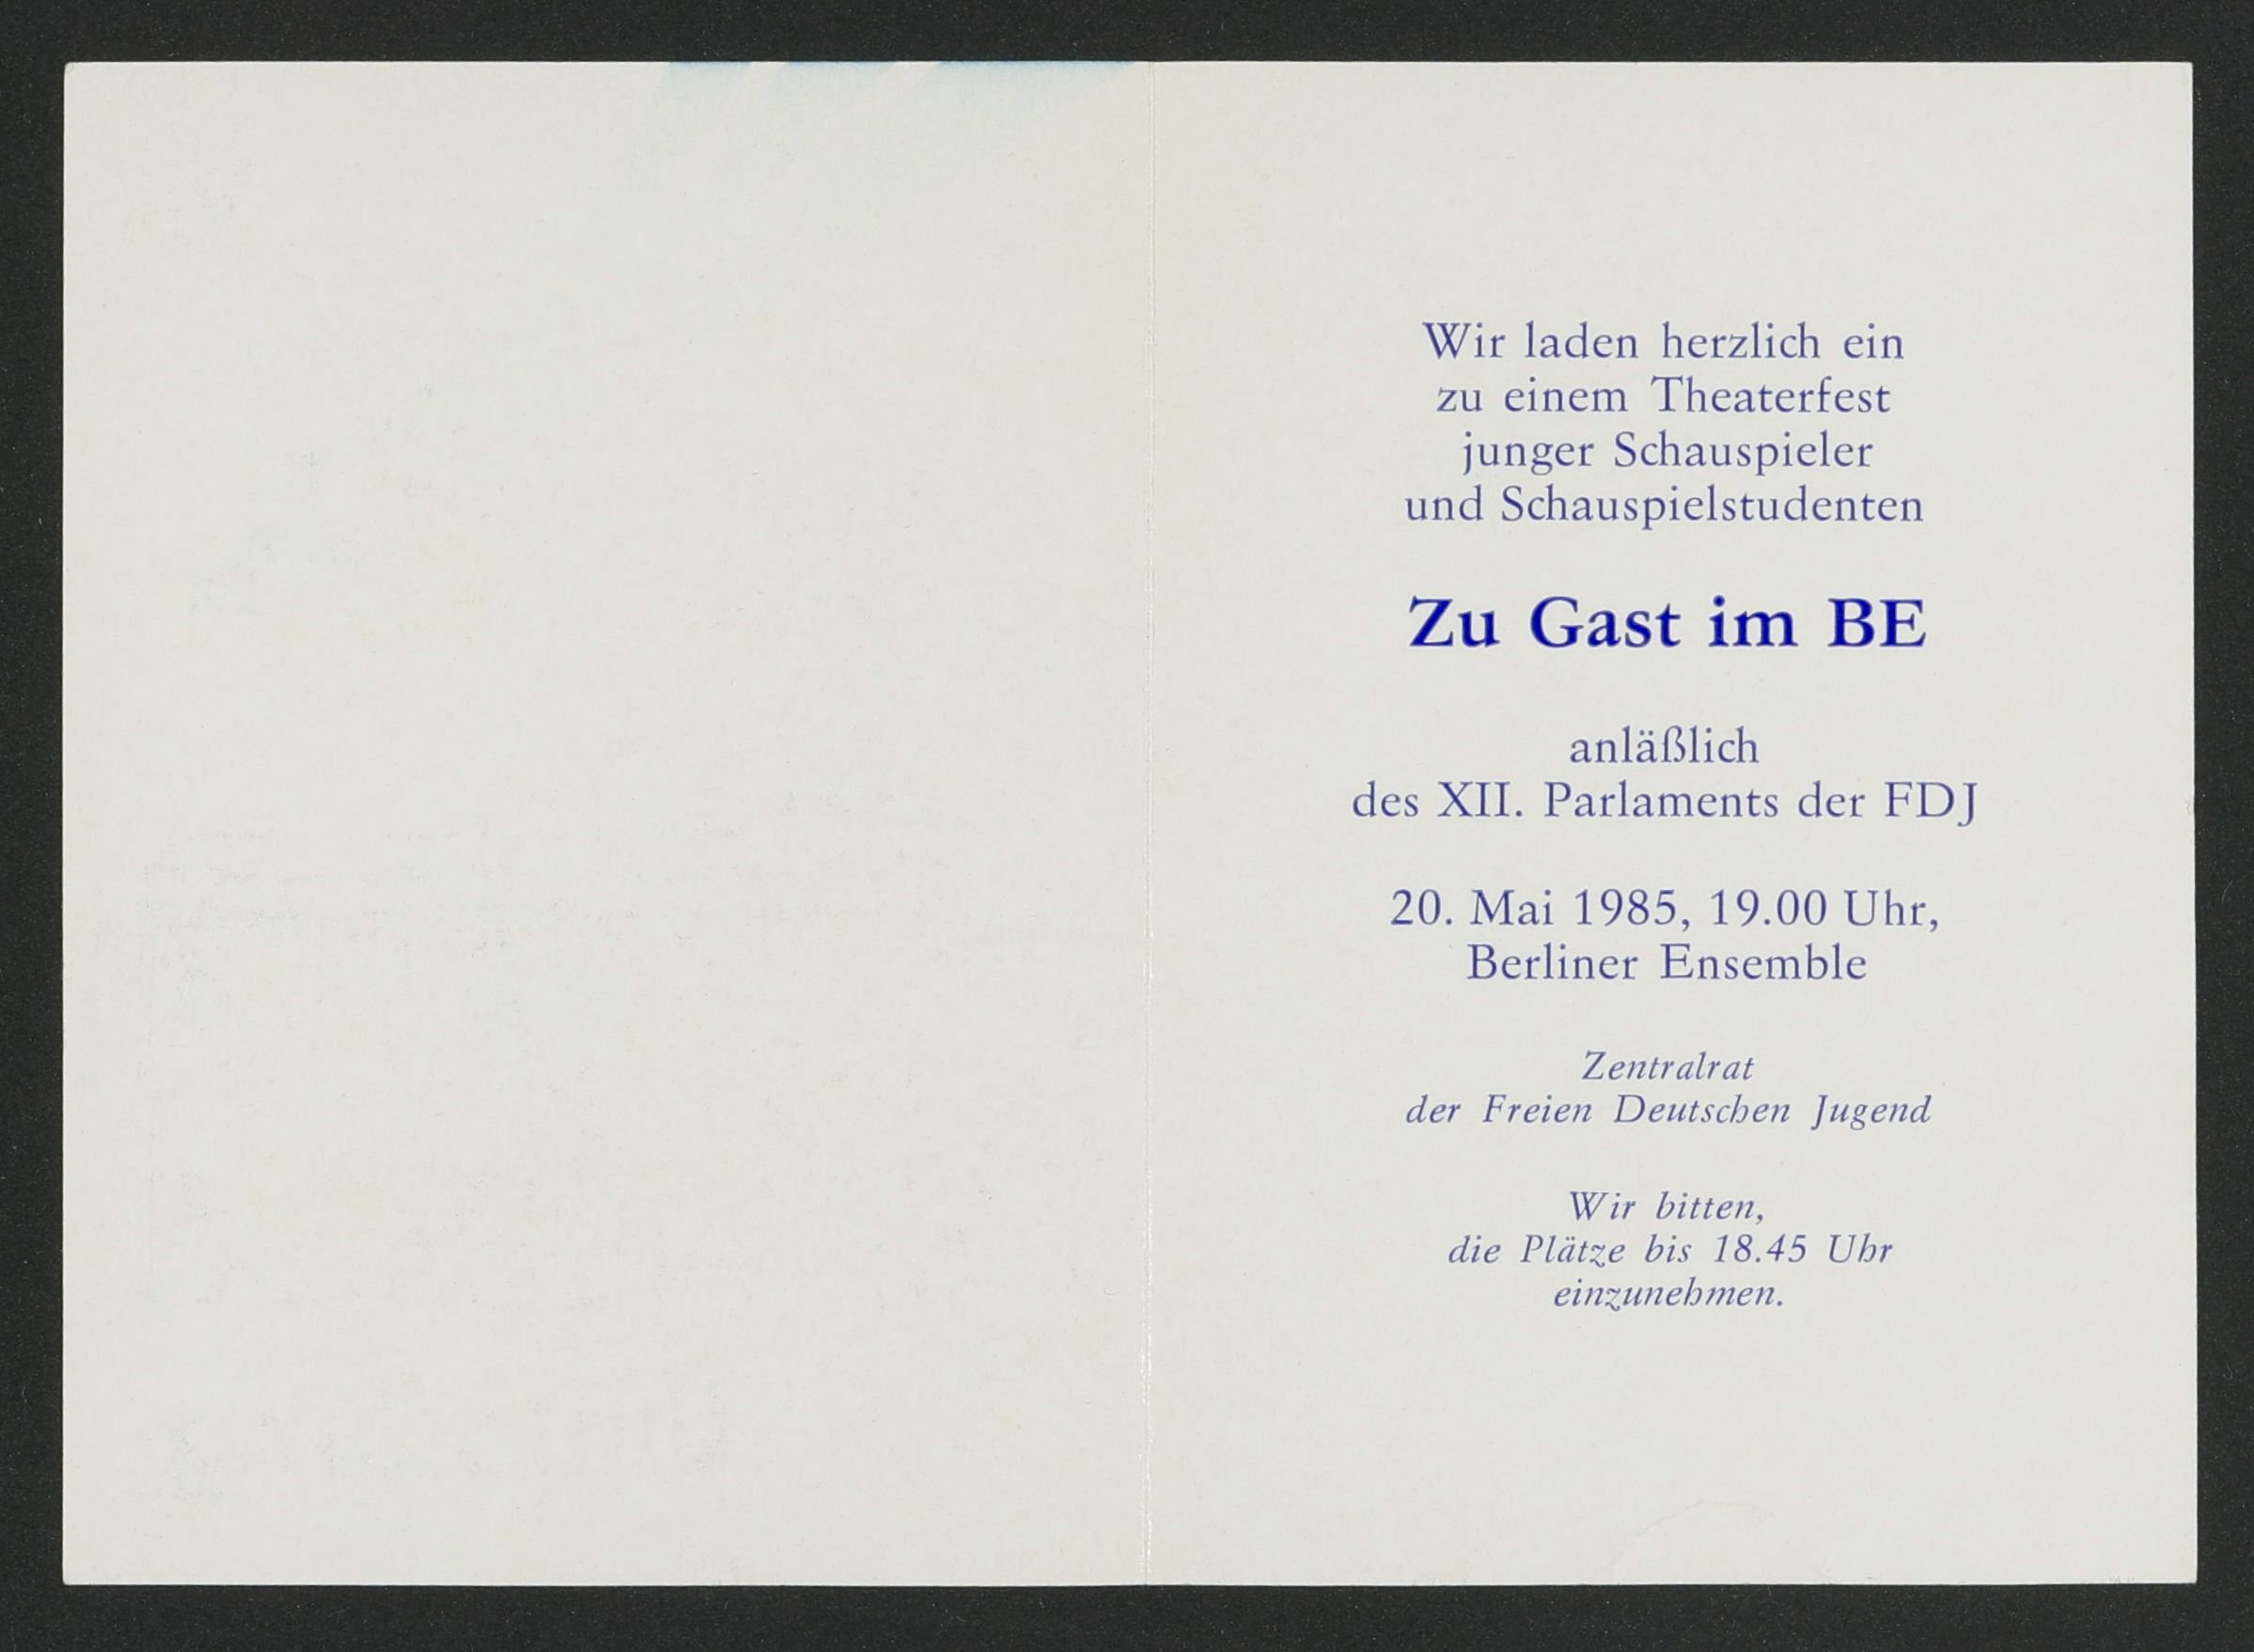 Einladung zur Theater-Veranstaltung "Zu Gast im BE" im Berliner Ensemble 1985 (Hochschule für Schauspielkunst Ernst Busch Berlin RR-F)